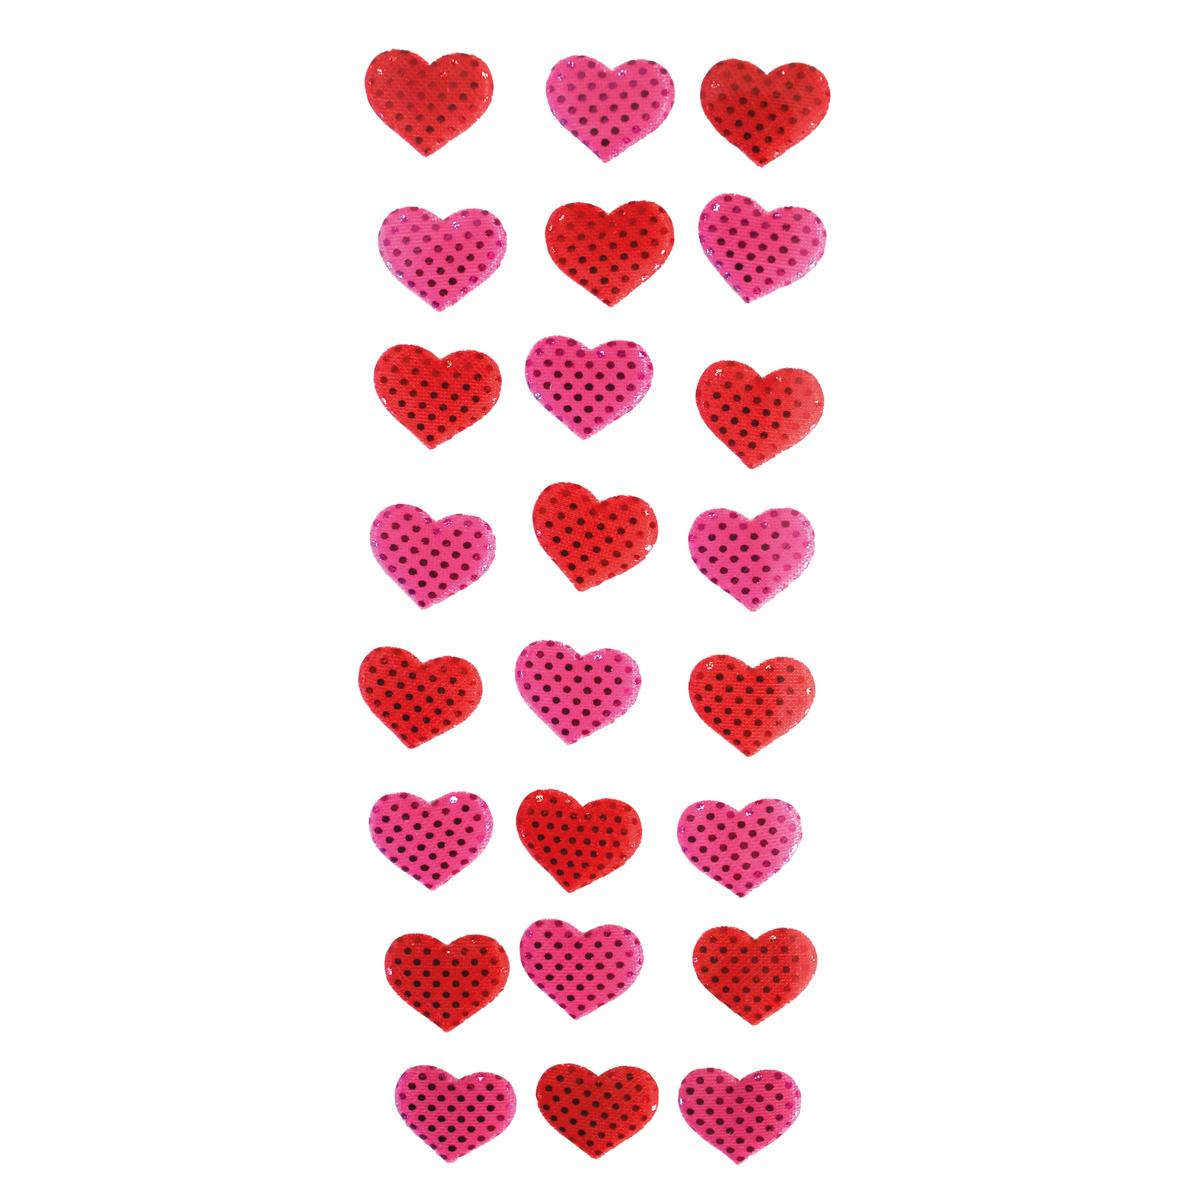 Stickers cœurs disco rouges et roses 1,8 x 1,5 cm x 24 pcs